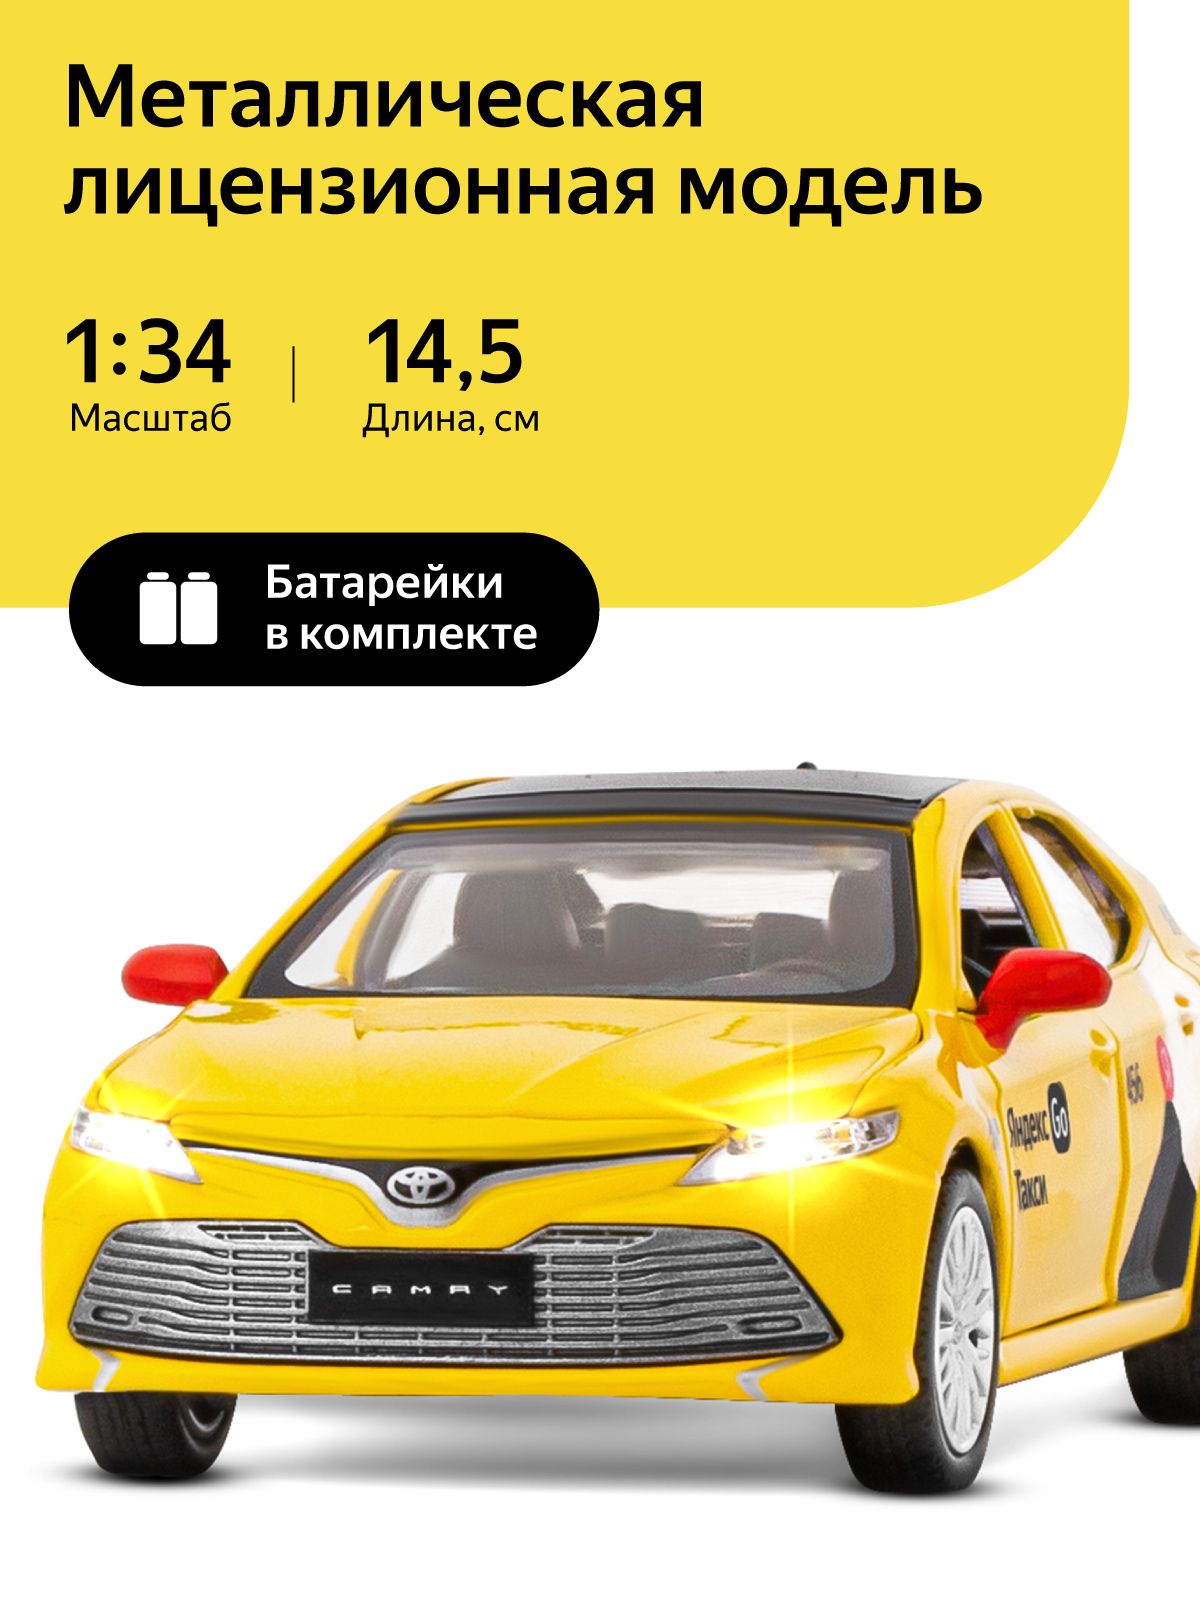 Машинка металлическая Яндекс Go Toyota Camry, 1:34, инерционная, желтый, JB1251482 машинка carline 1 64 металл инерционная в блистере оранжевая gt9346